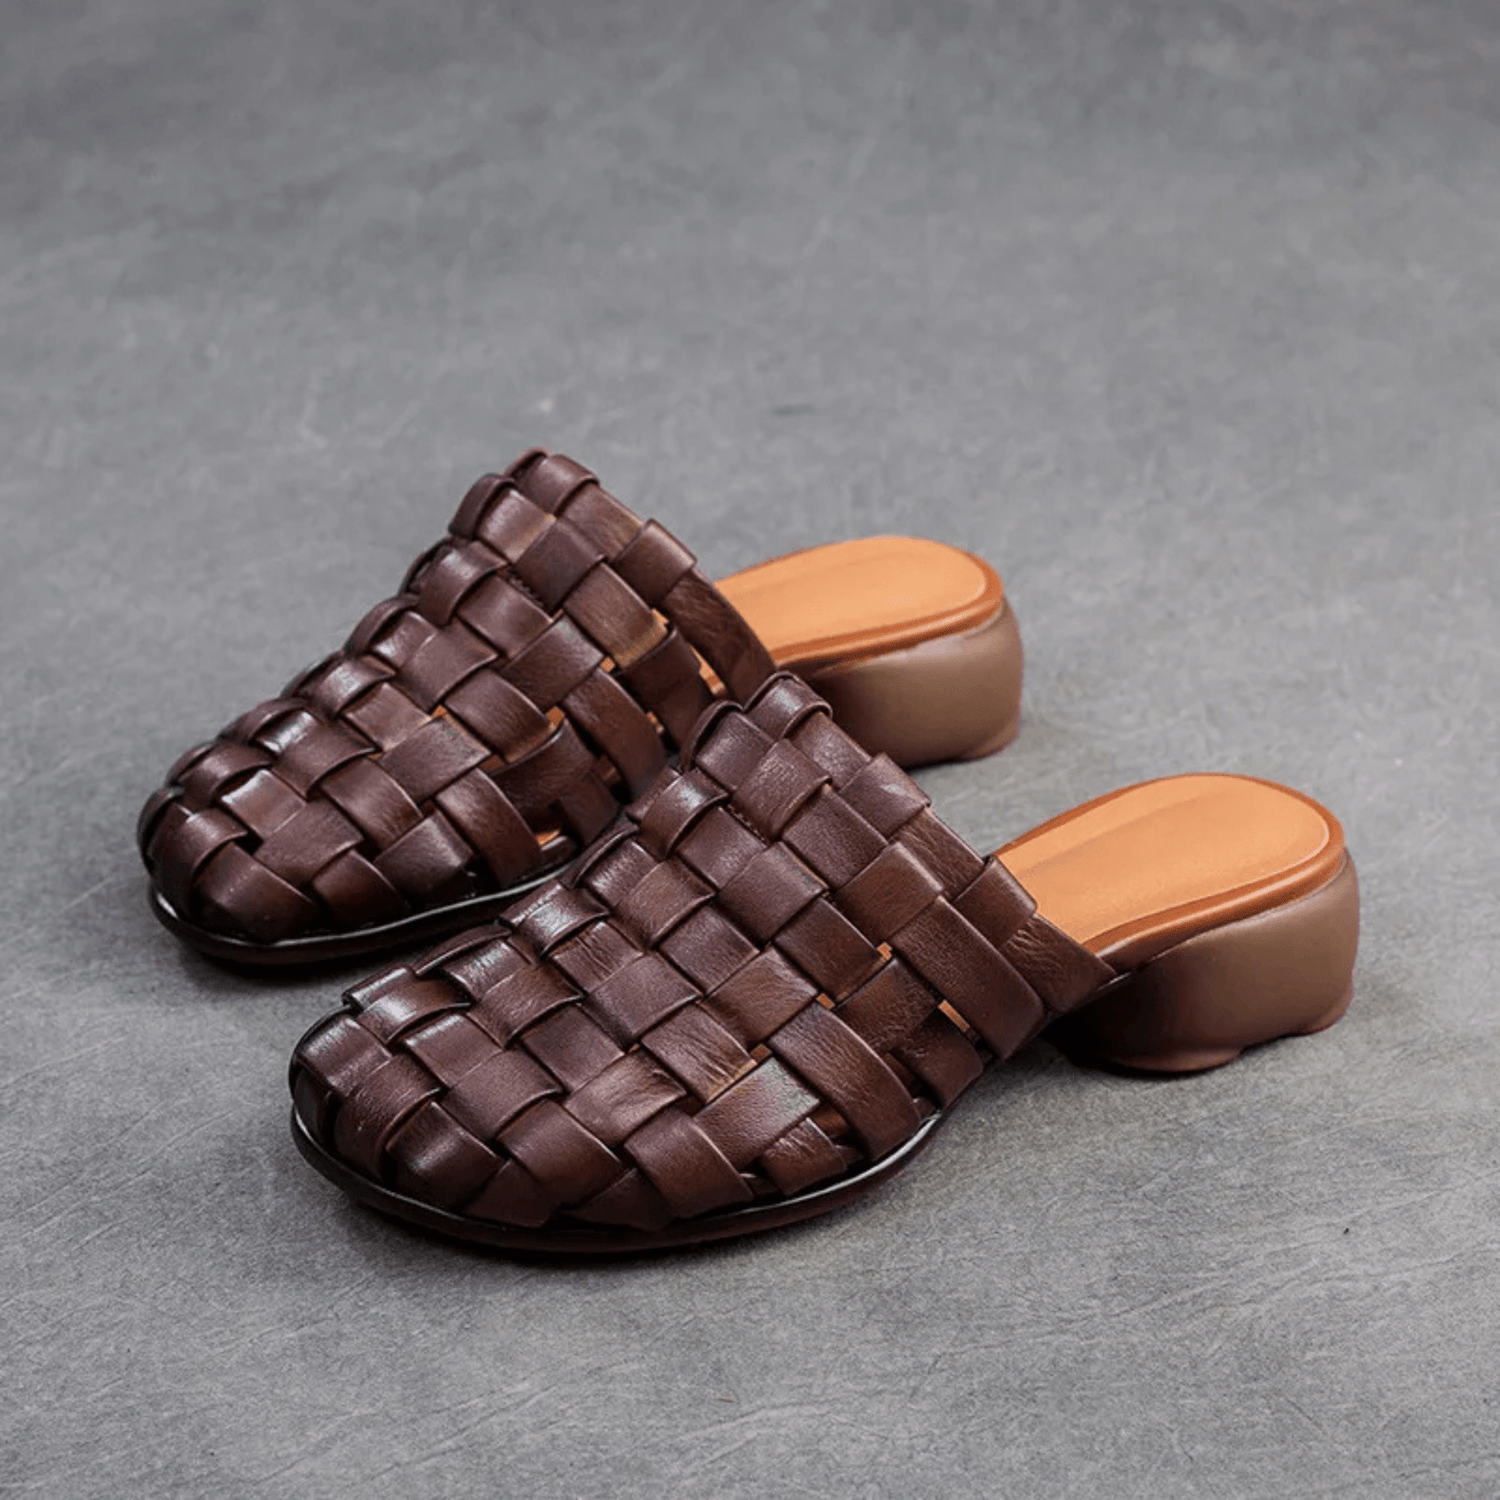 Retro Leather Weaving Shoes - Trendiesty Worldwide